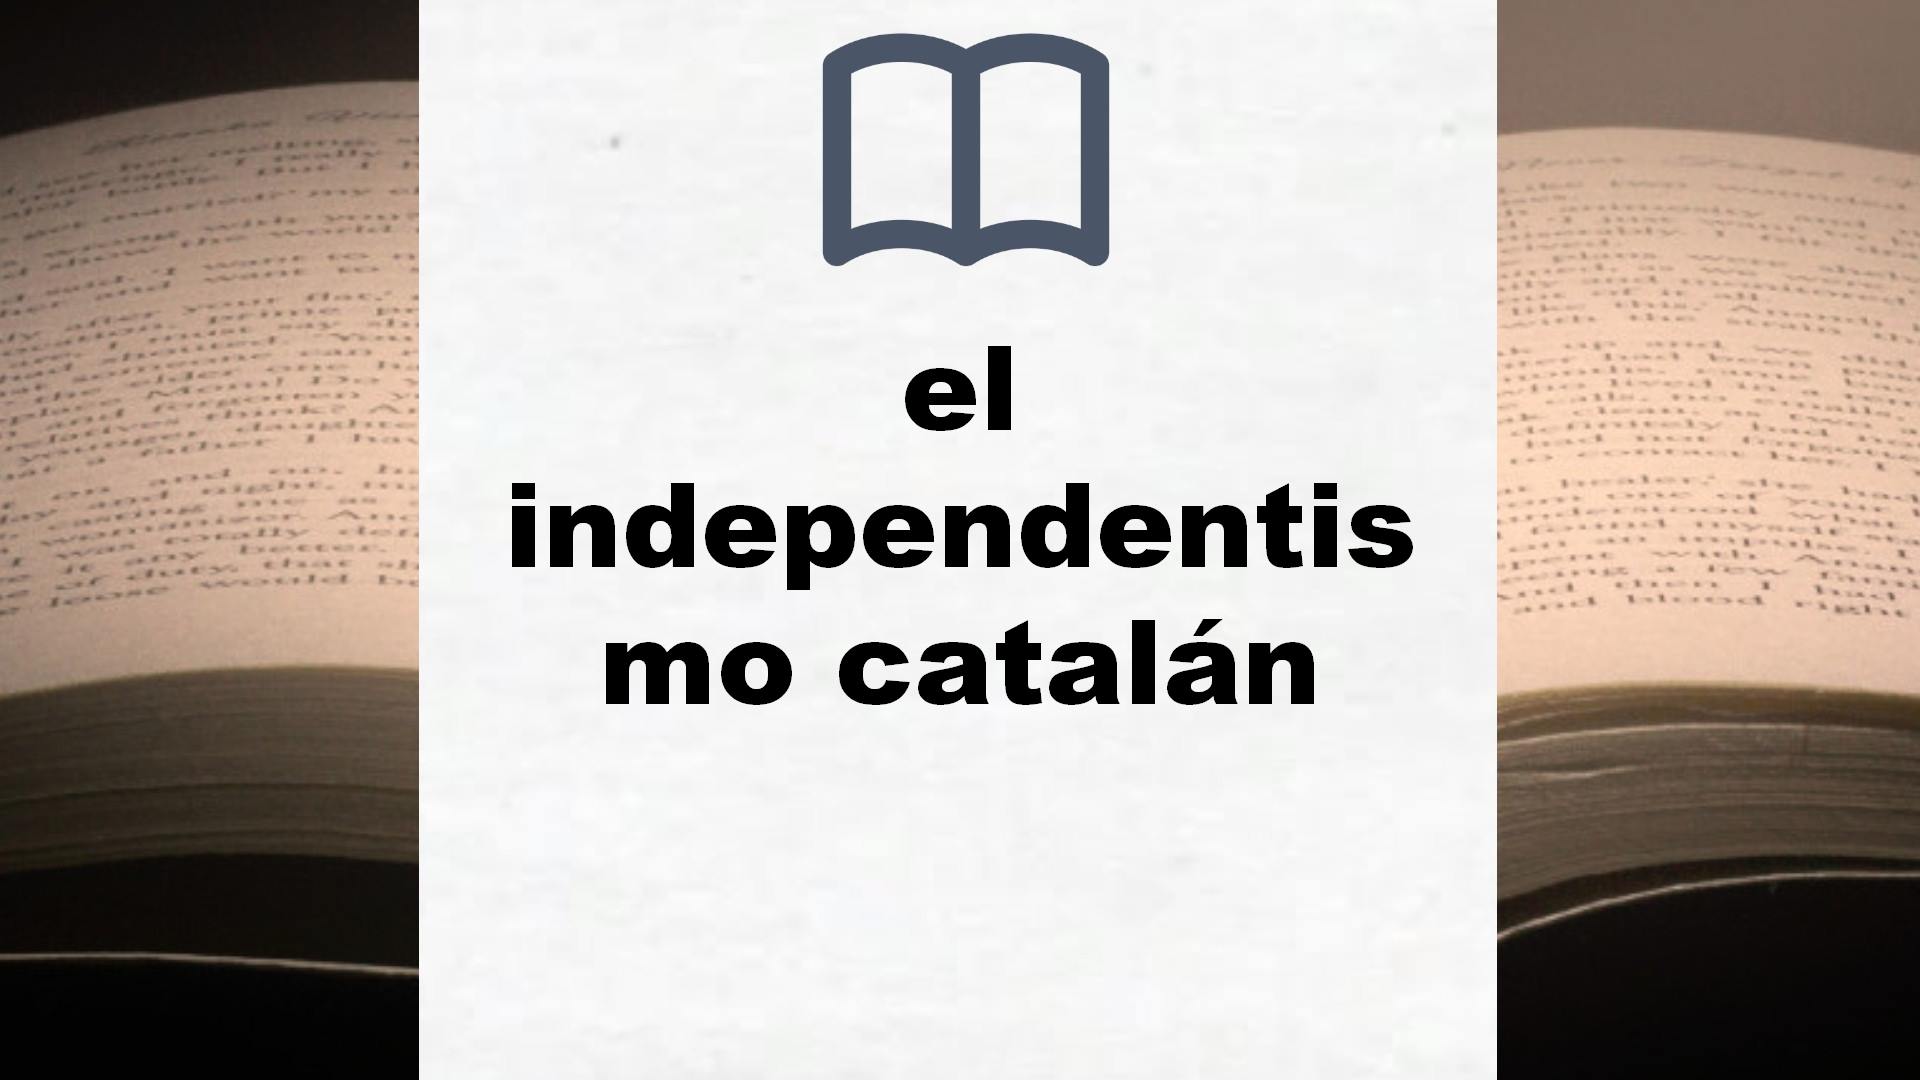 Libros sobre el independentismo catalán